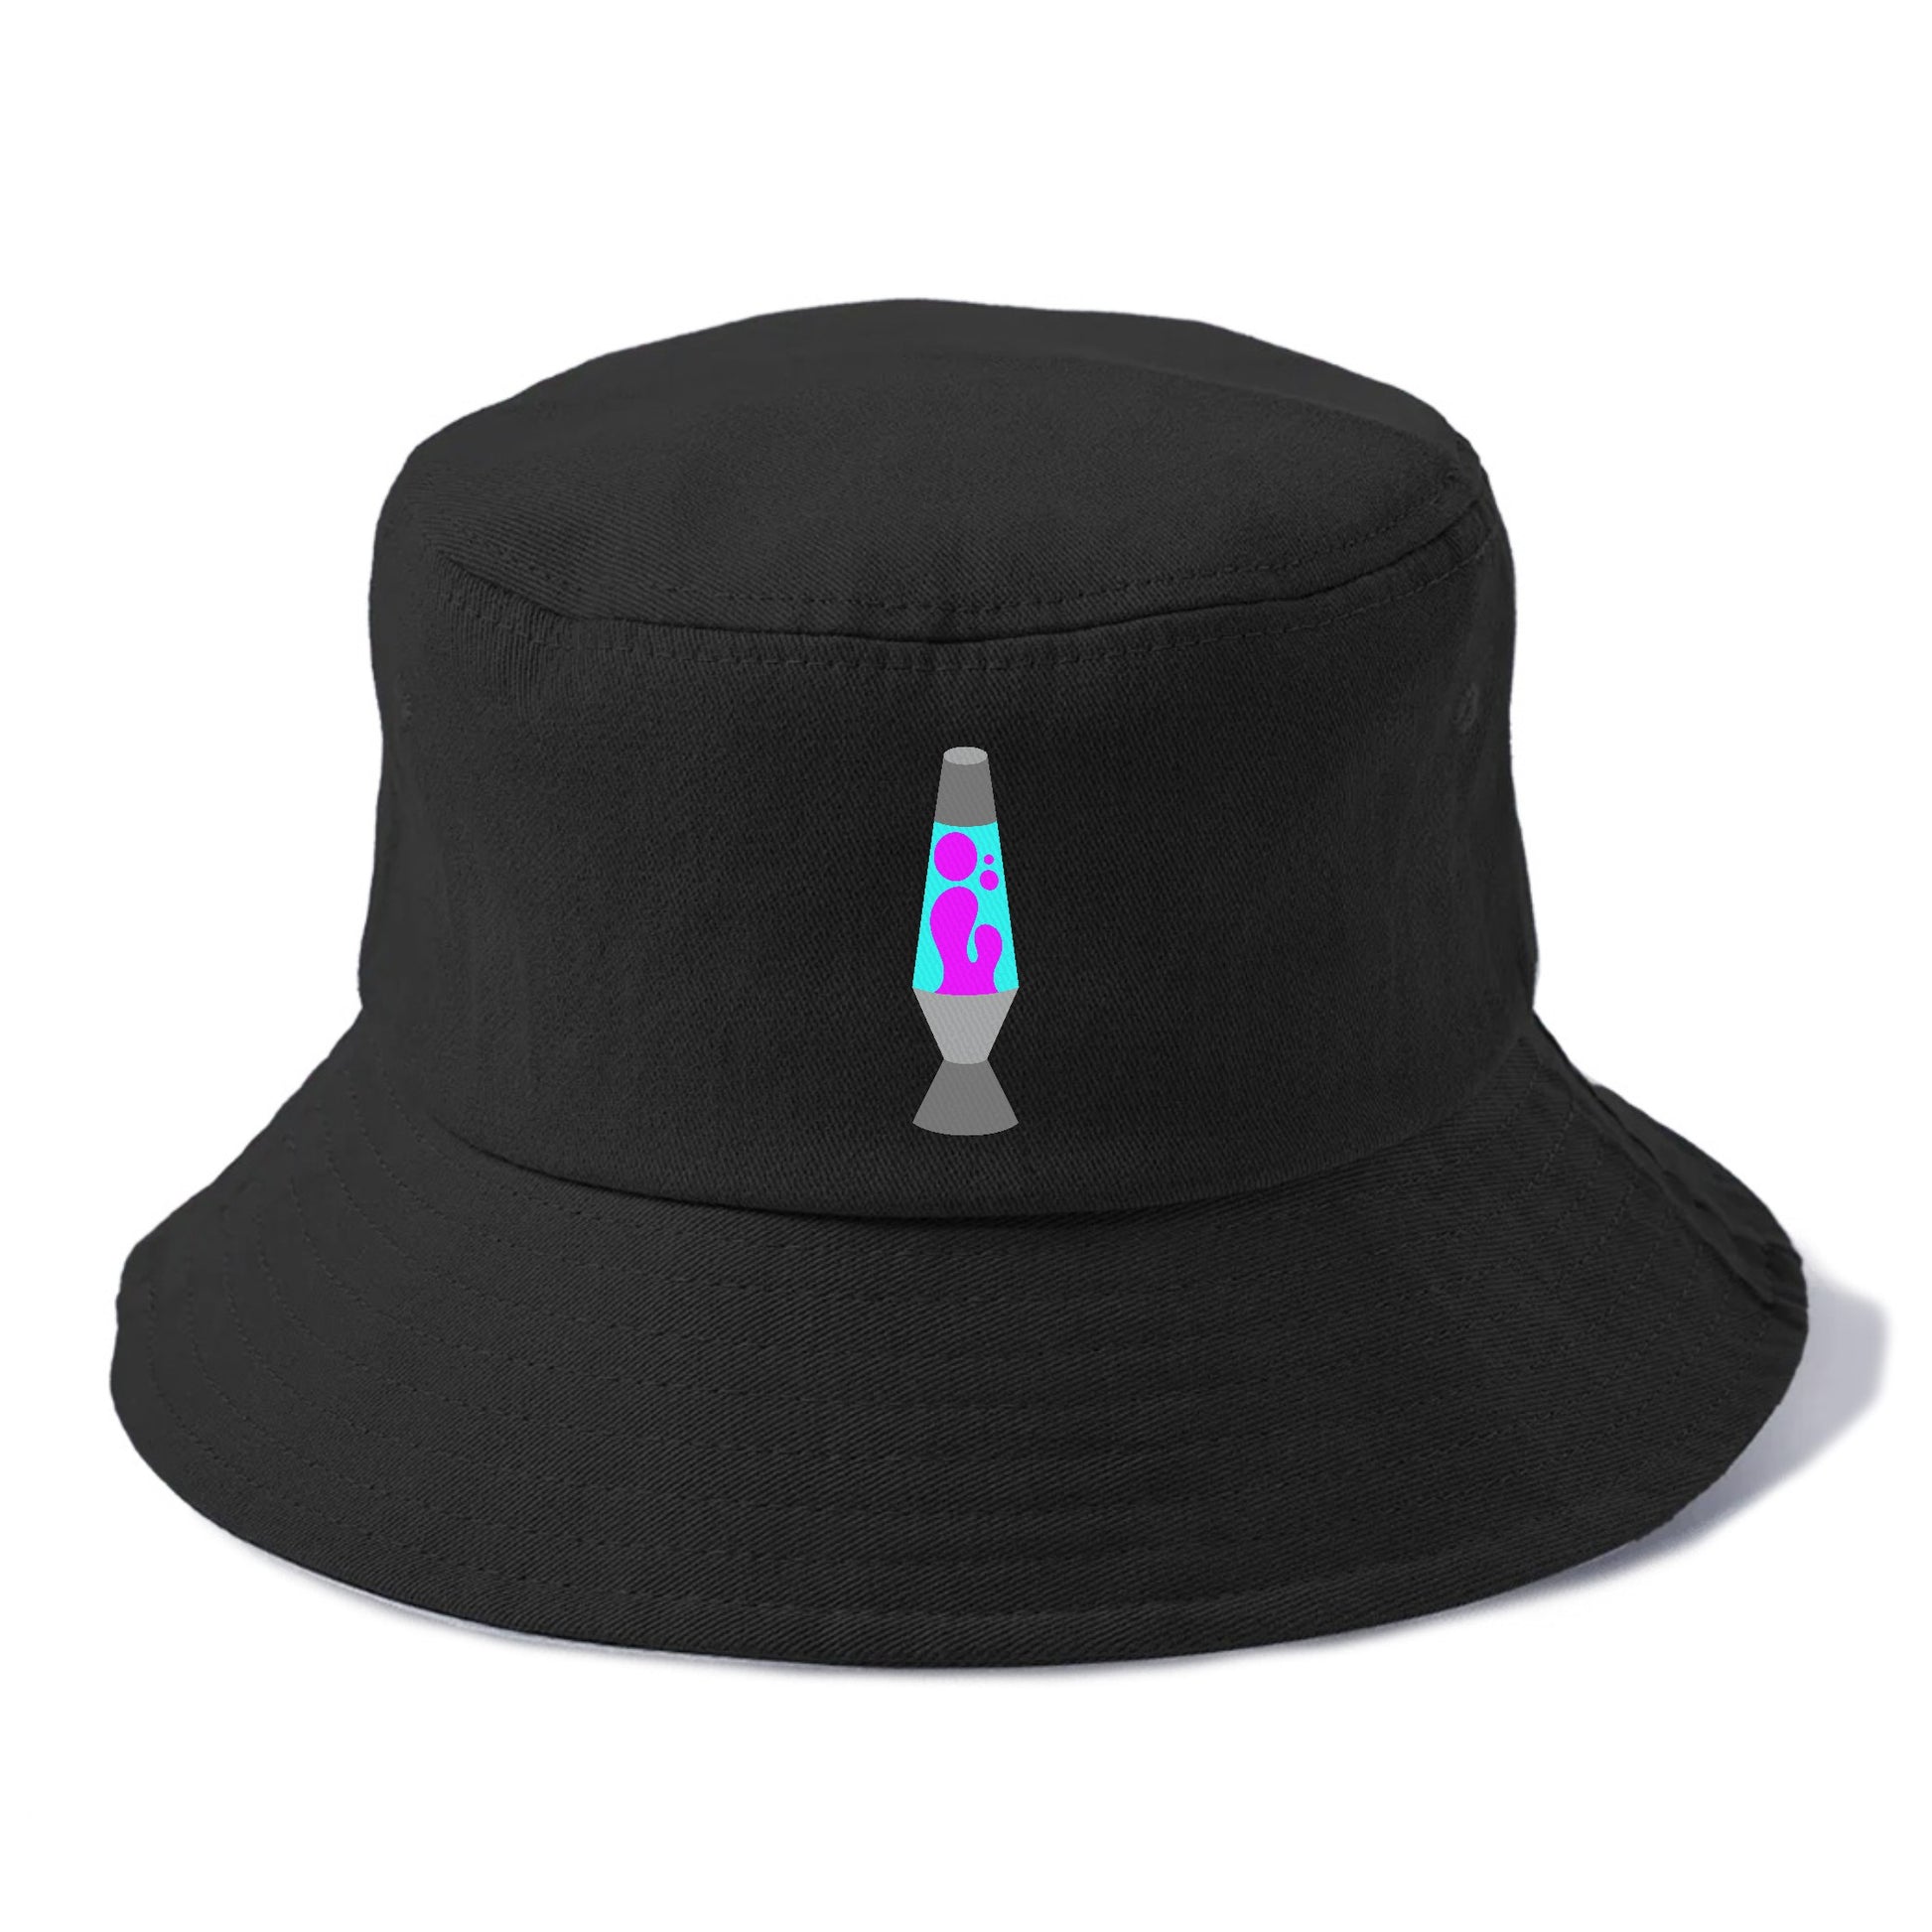 Retro 80s Lava Lamp Blue Hat